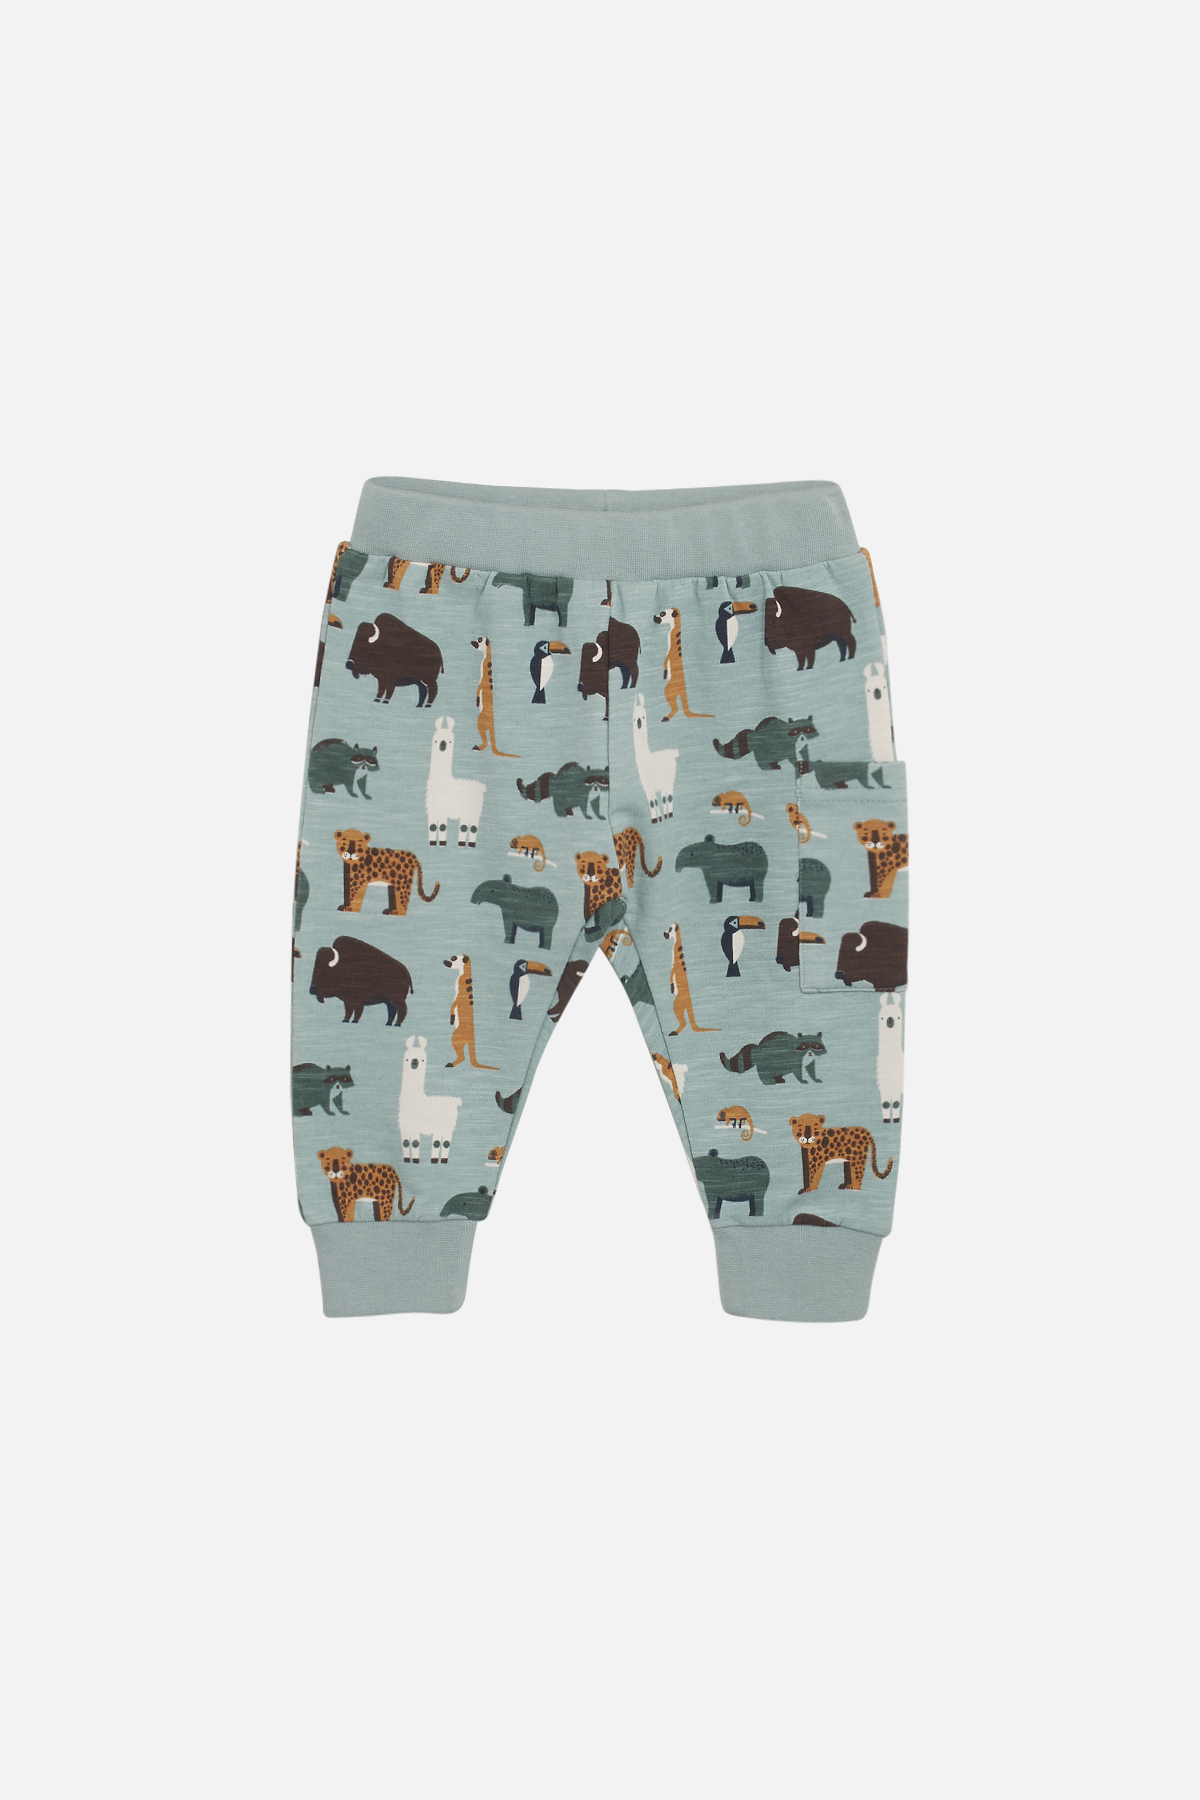 Pantaloni Gus Animali per bambini in cotone biologico